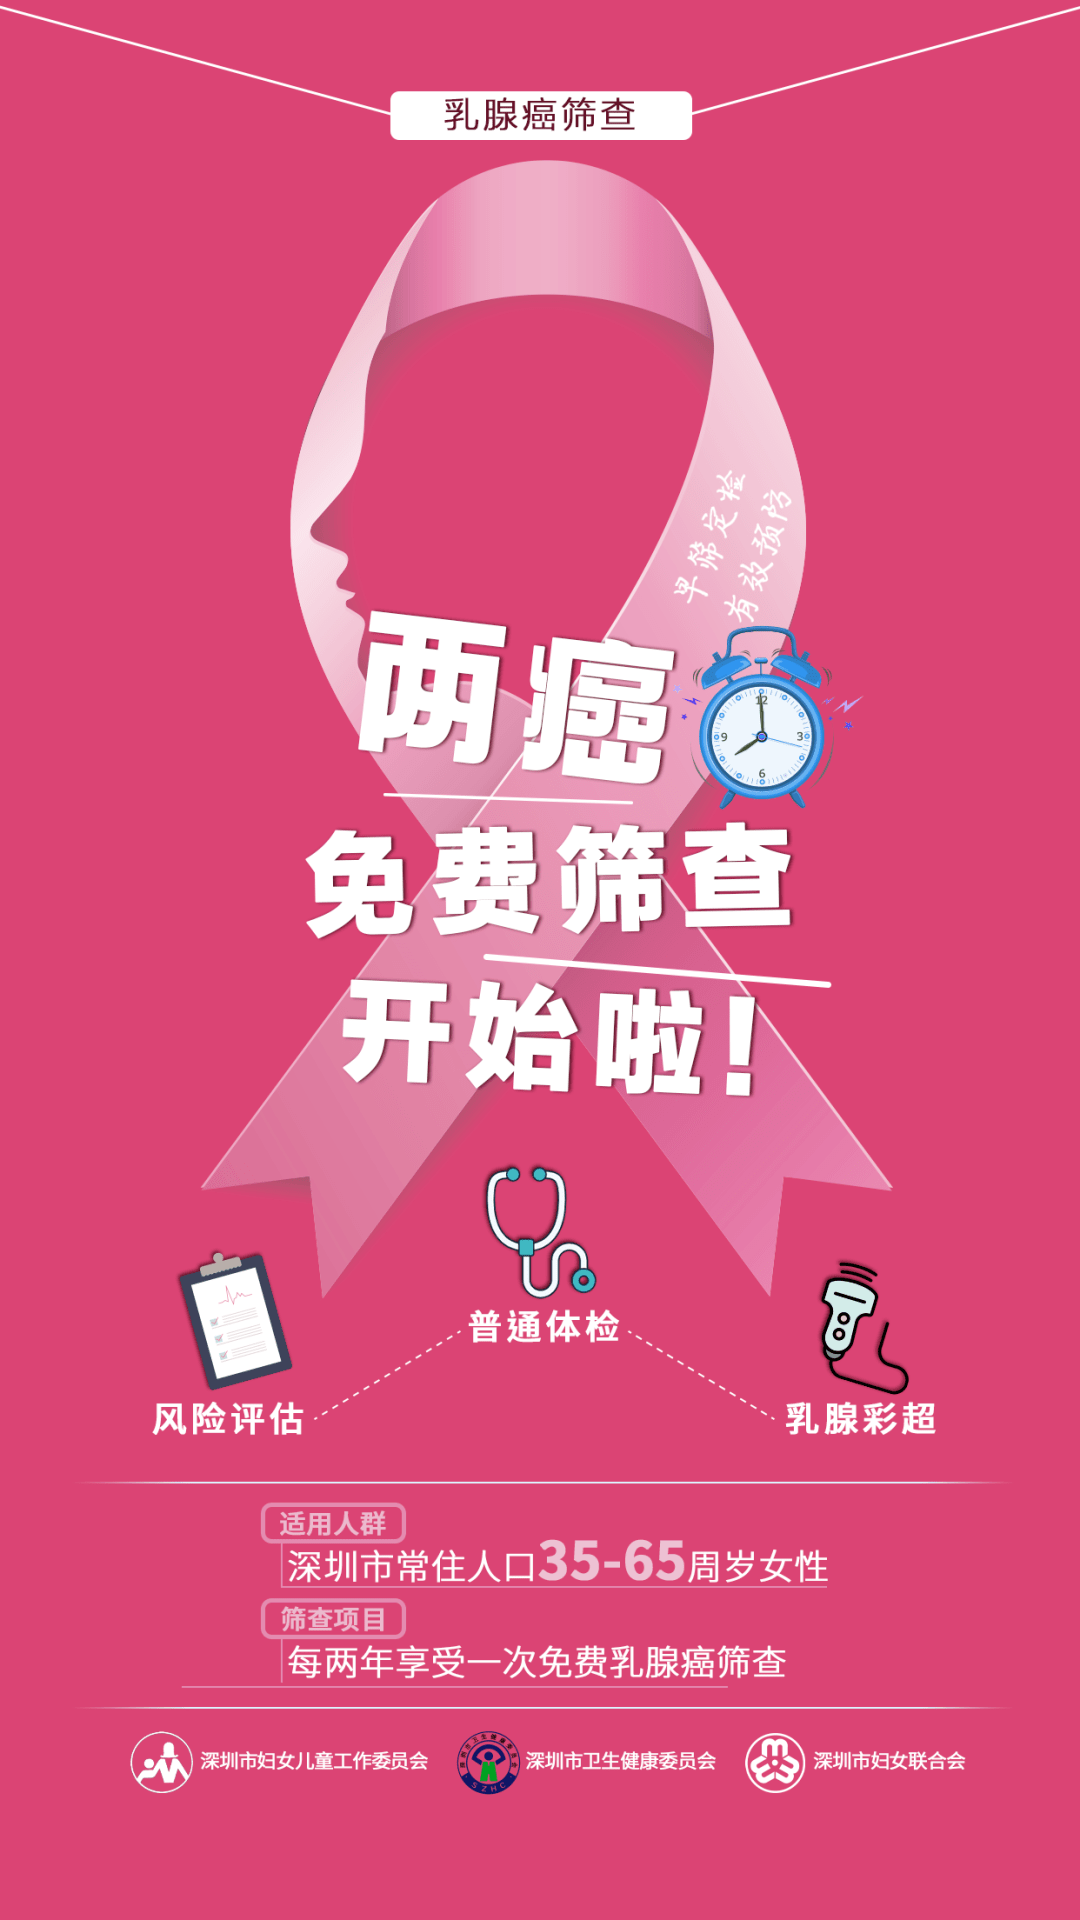 2021年深圳适龄妇女免费两癌筛查好消息!